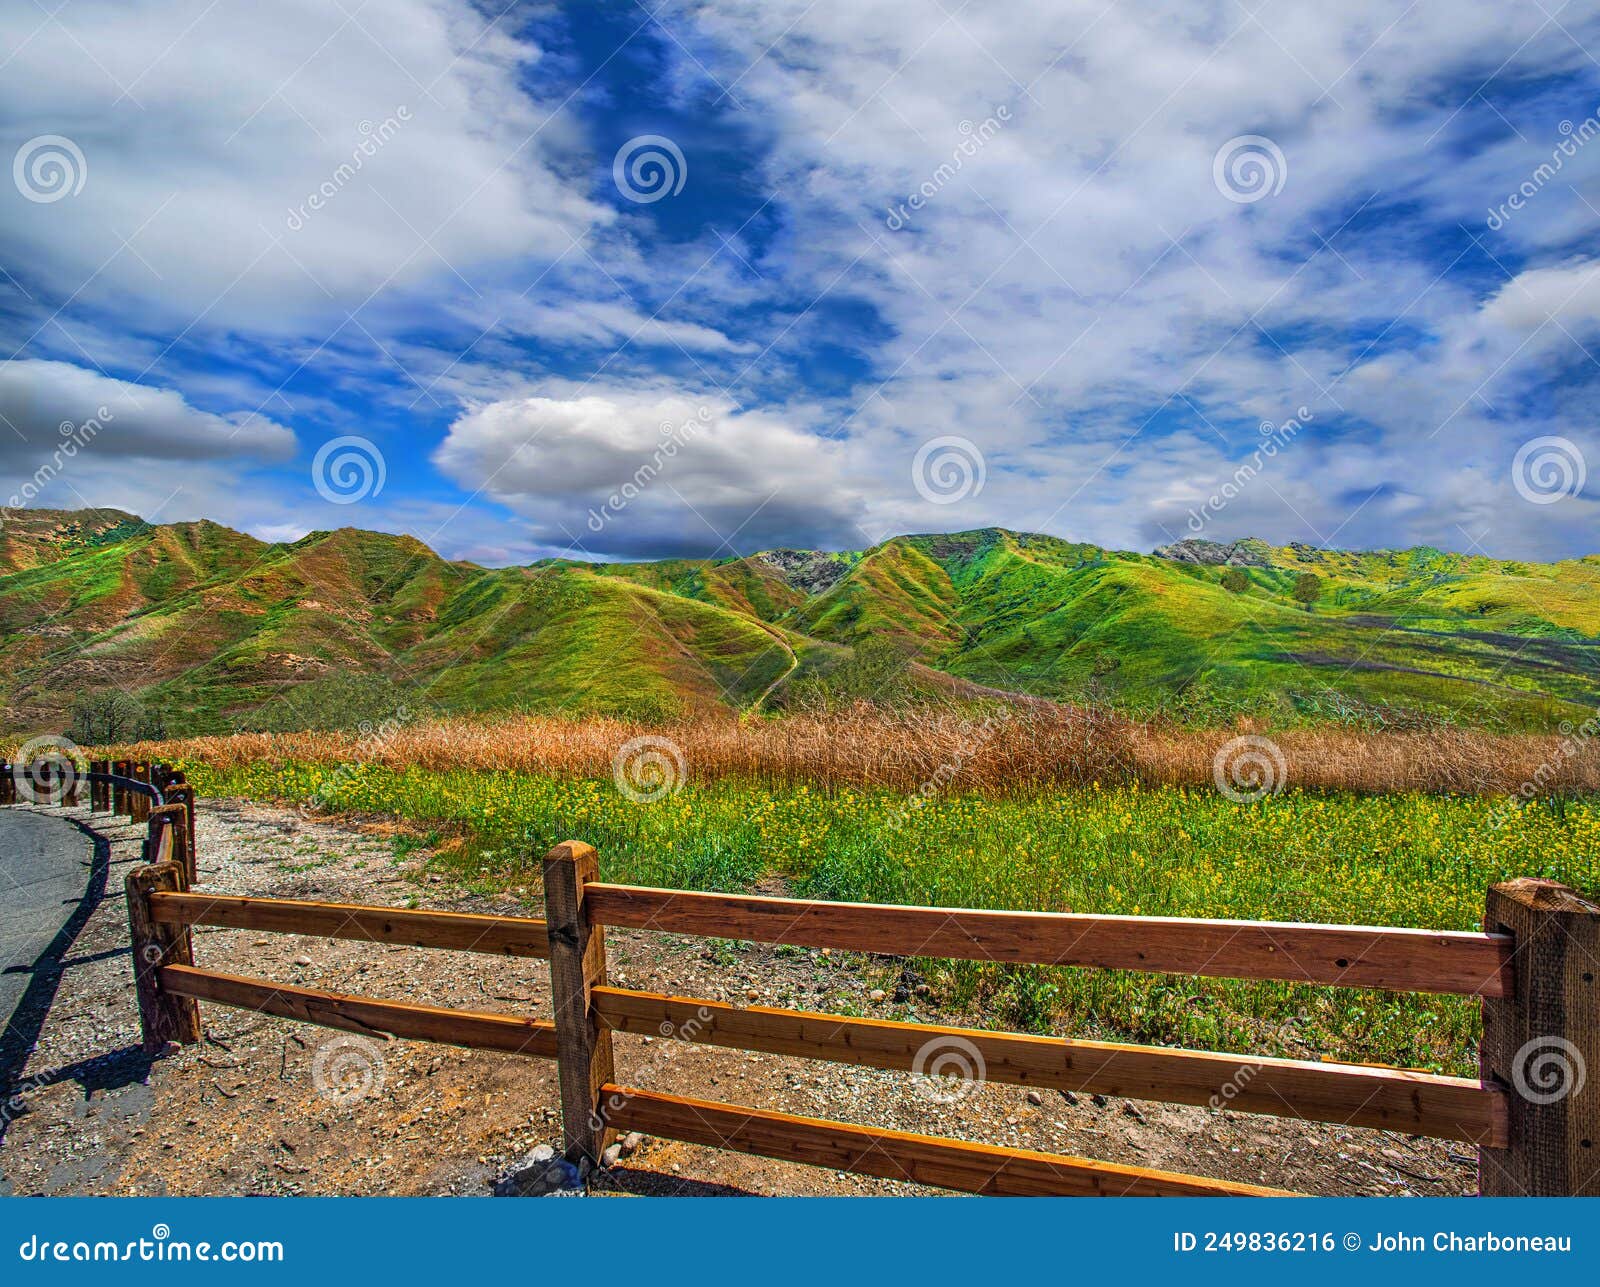 chino hills, ca. state park spring wildflower fields landscape